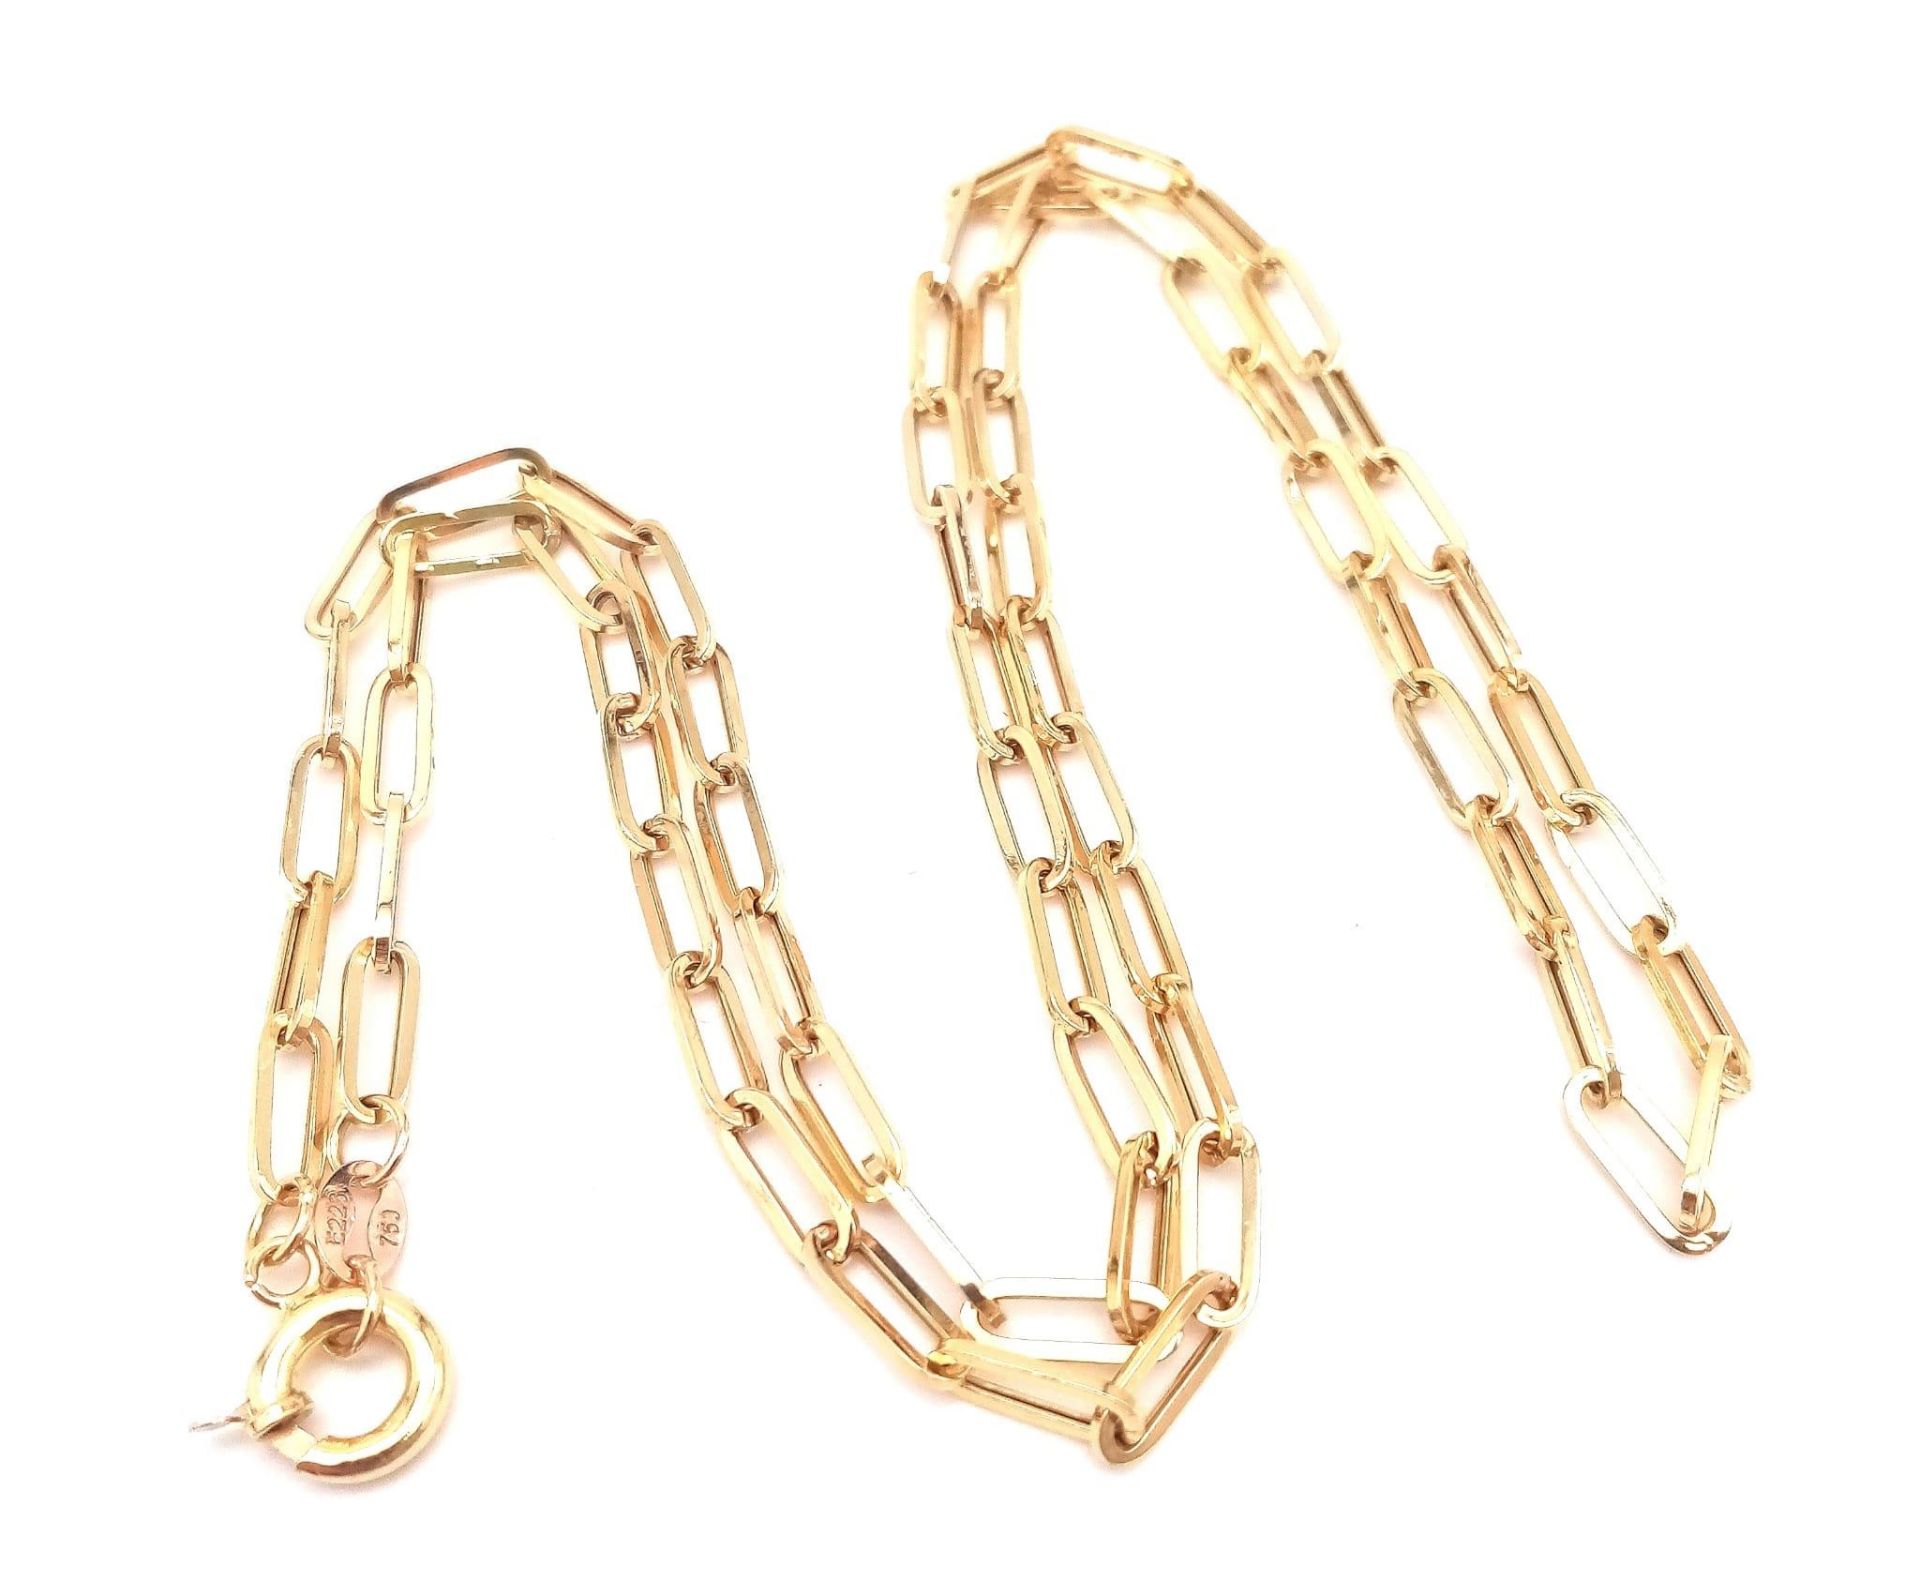 An 18K Yellow Gold Elongated Link Chain. 56cm length. 5.5g weight. - Bild 7 aus 9